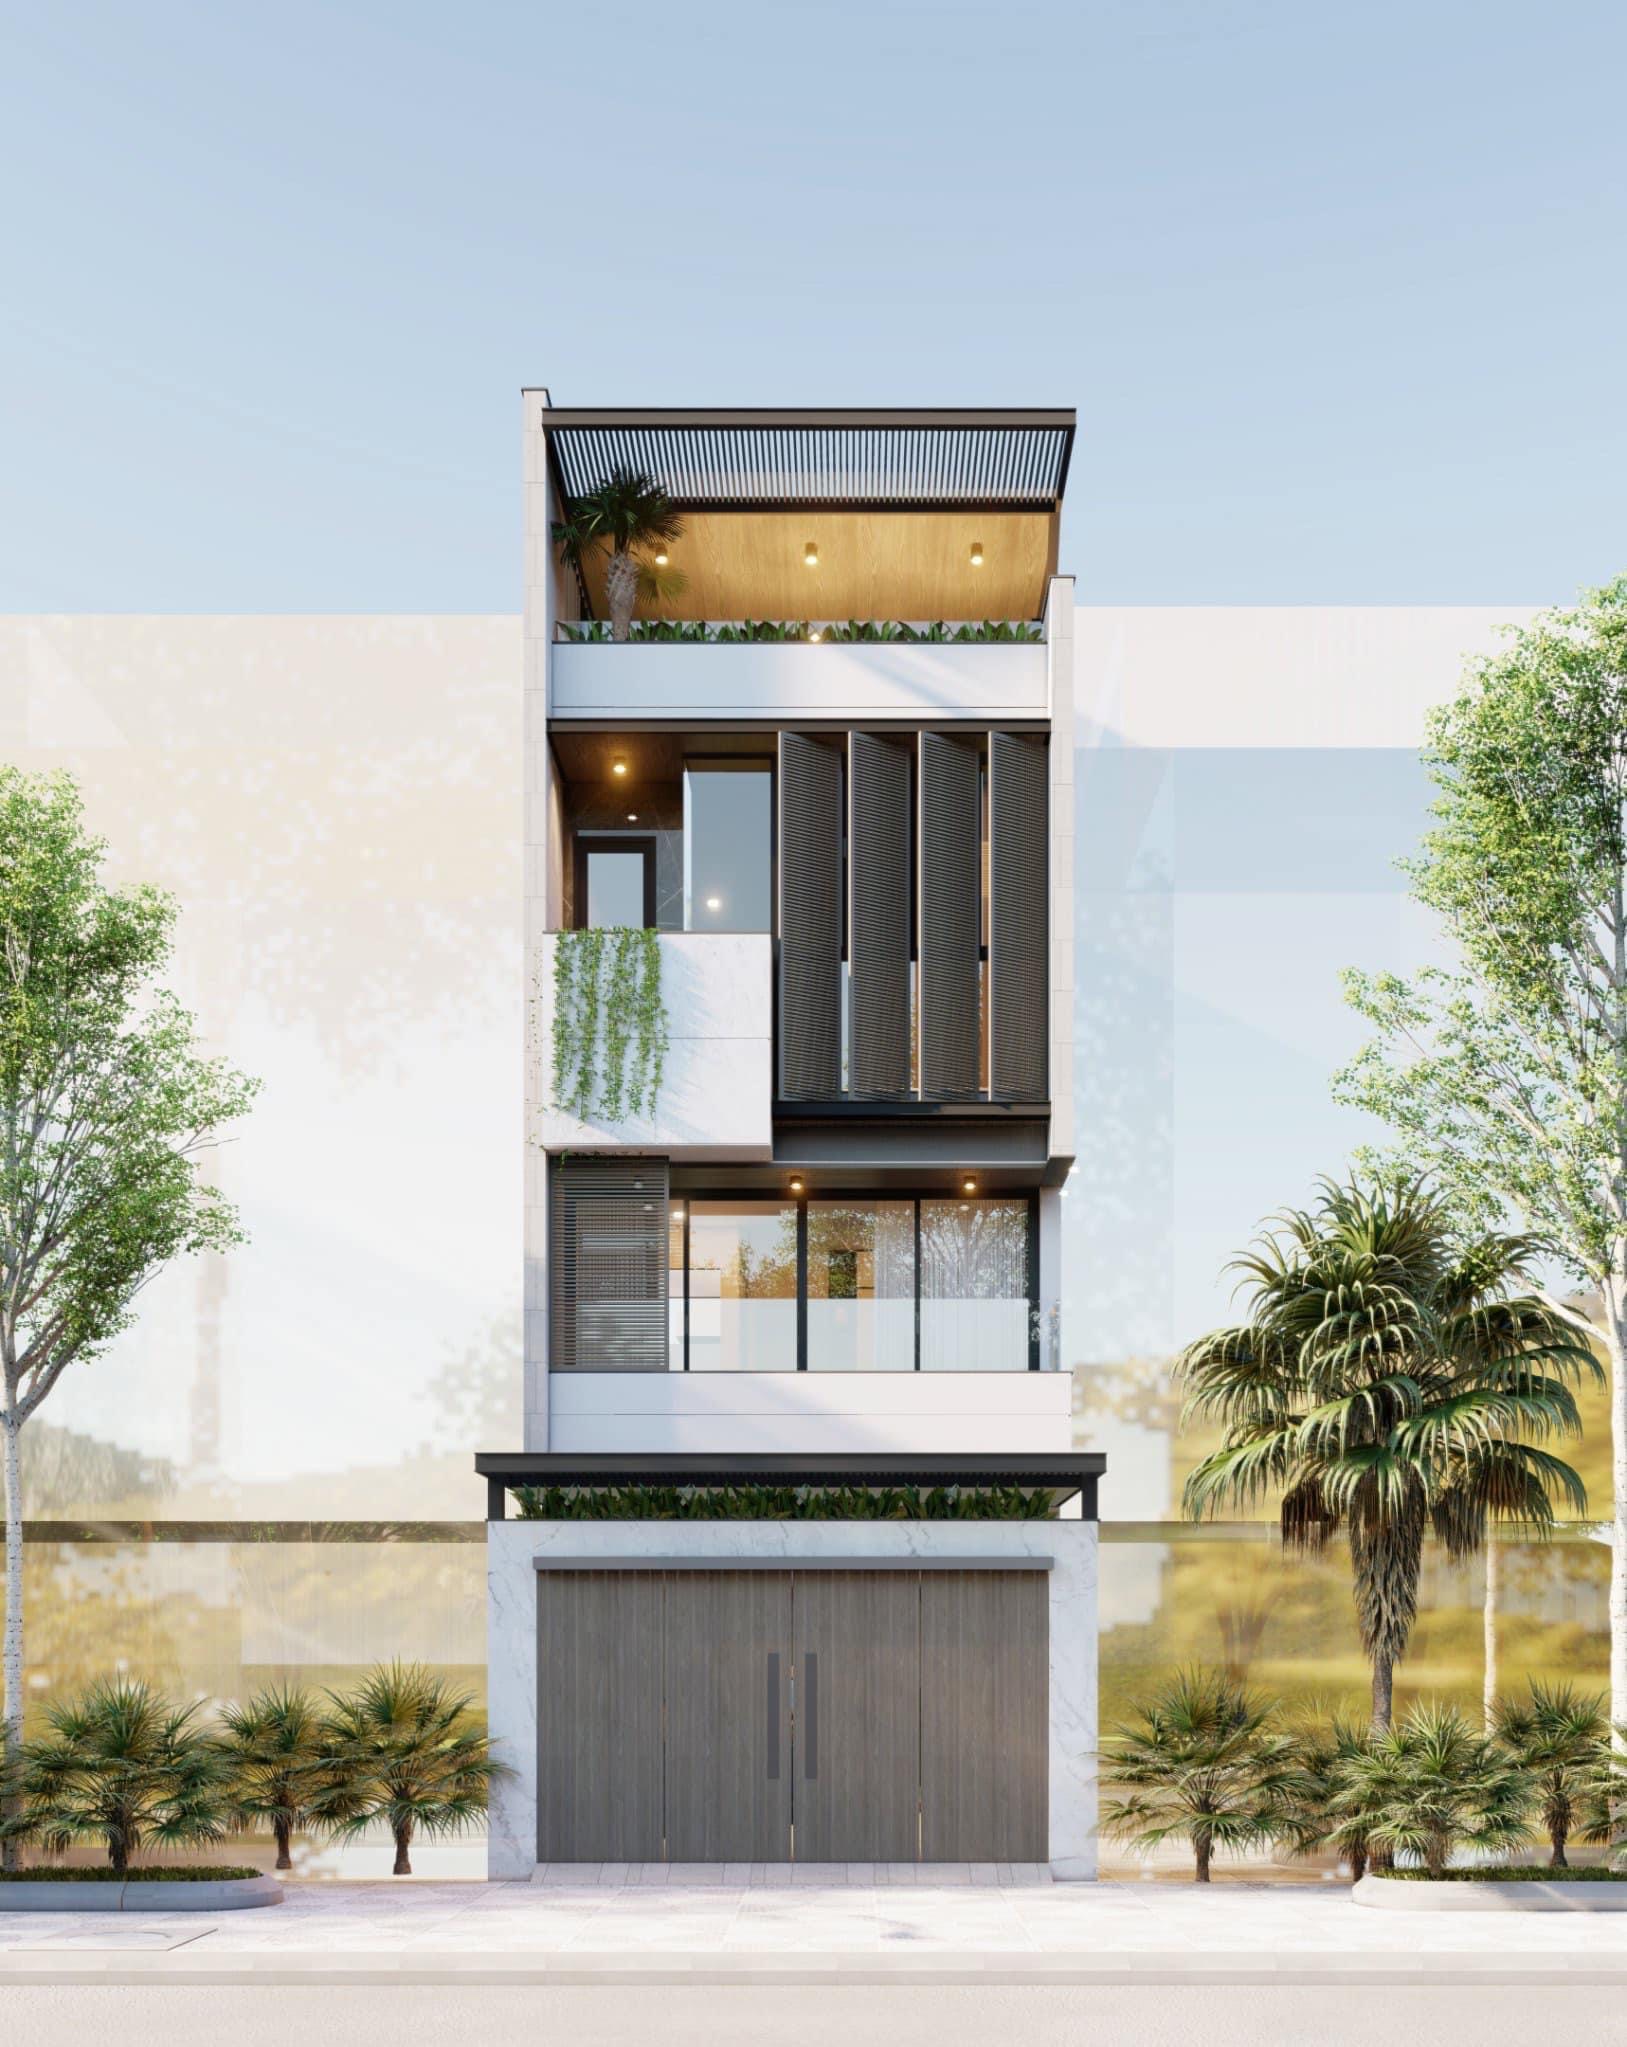 Vợ chồng Phan Mạnh Quỳnh khoe căn nhà 3 tầng mới xây: Tự tay chọn từng viên gạch, không gian khang trang xịn xò